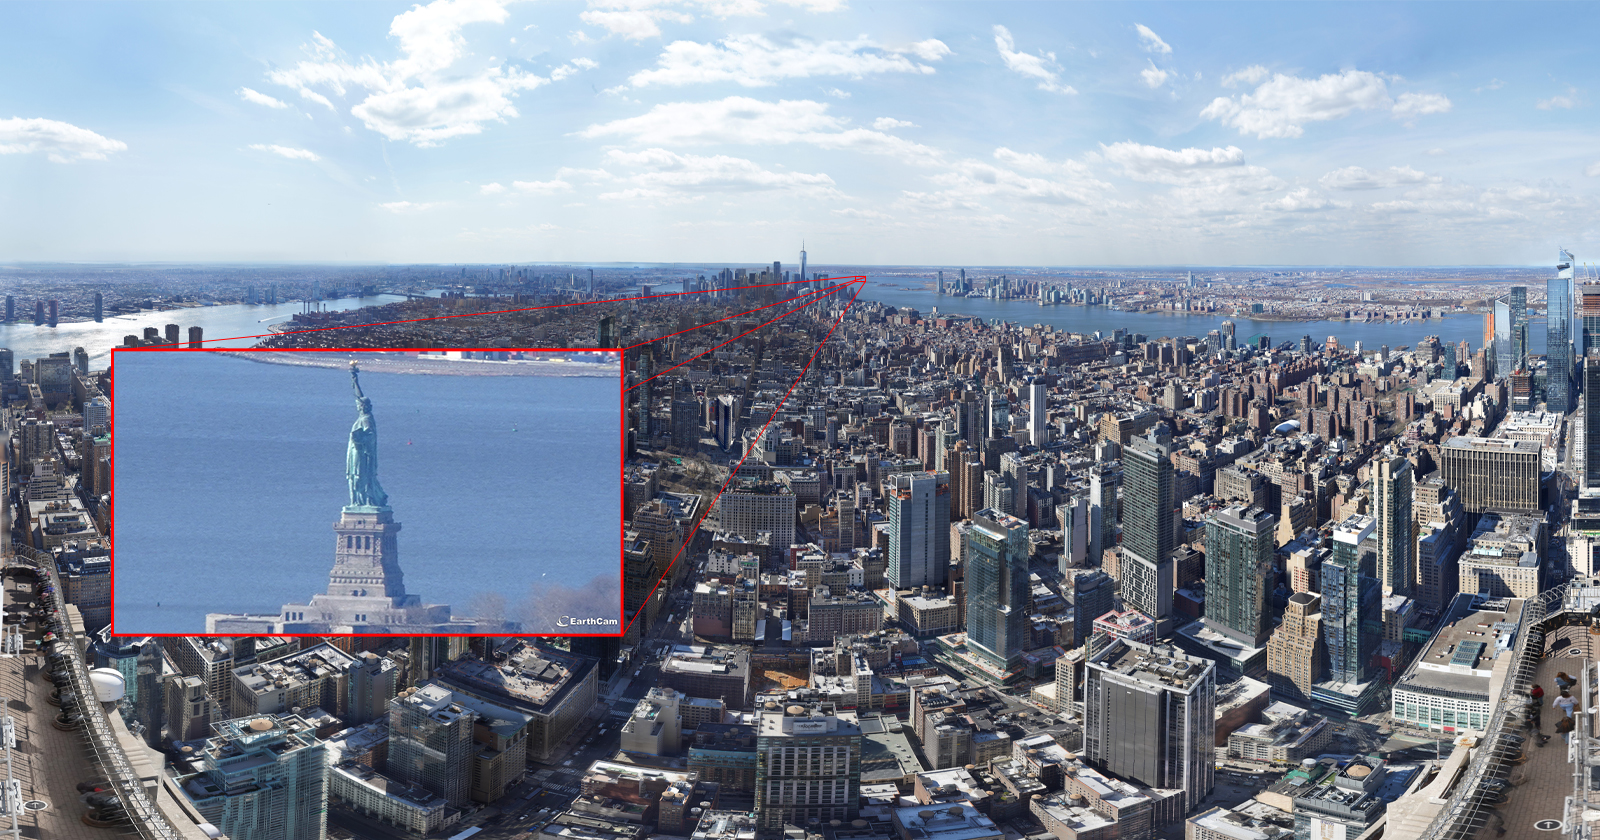 Опубликована самая детальная фотография Нью-Йорка разрешением в 120 гигапикселей